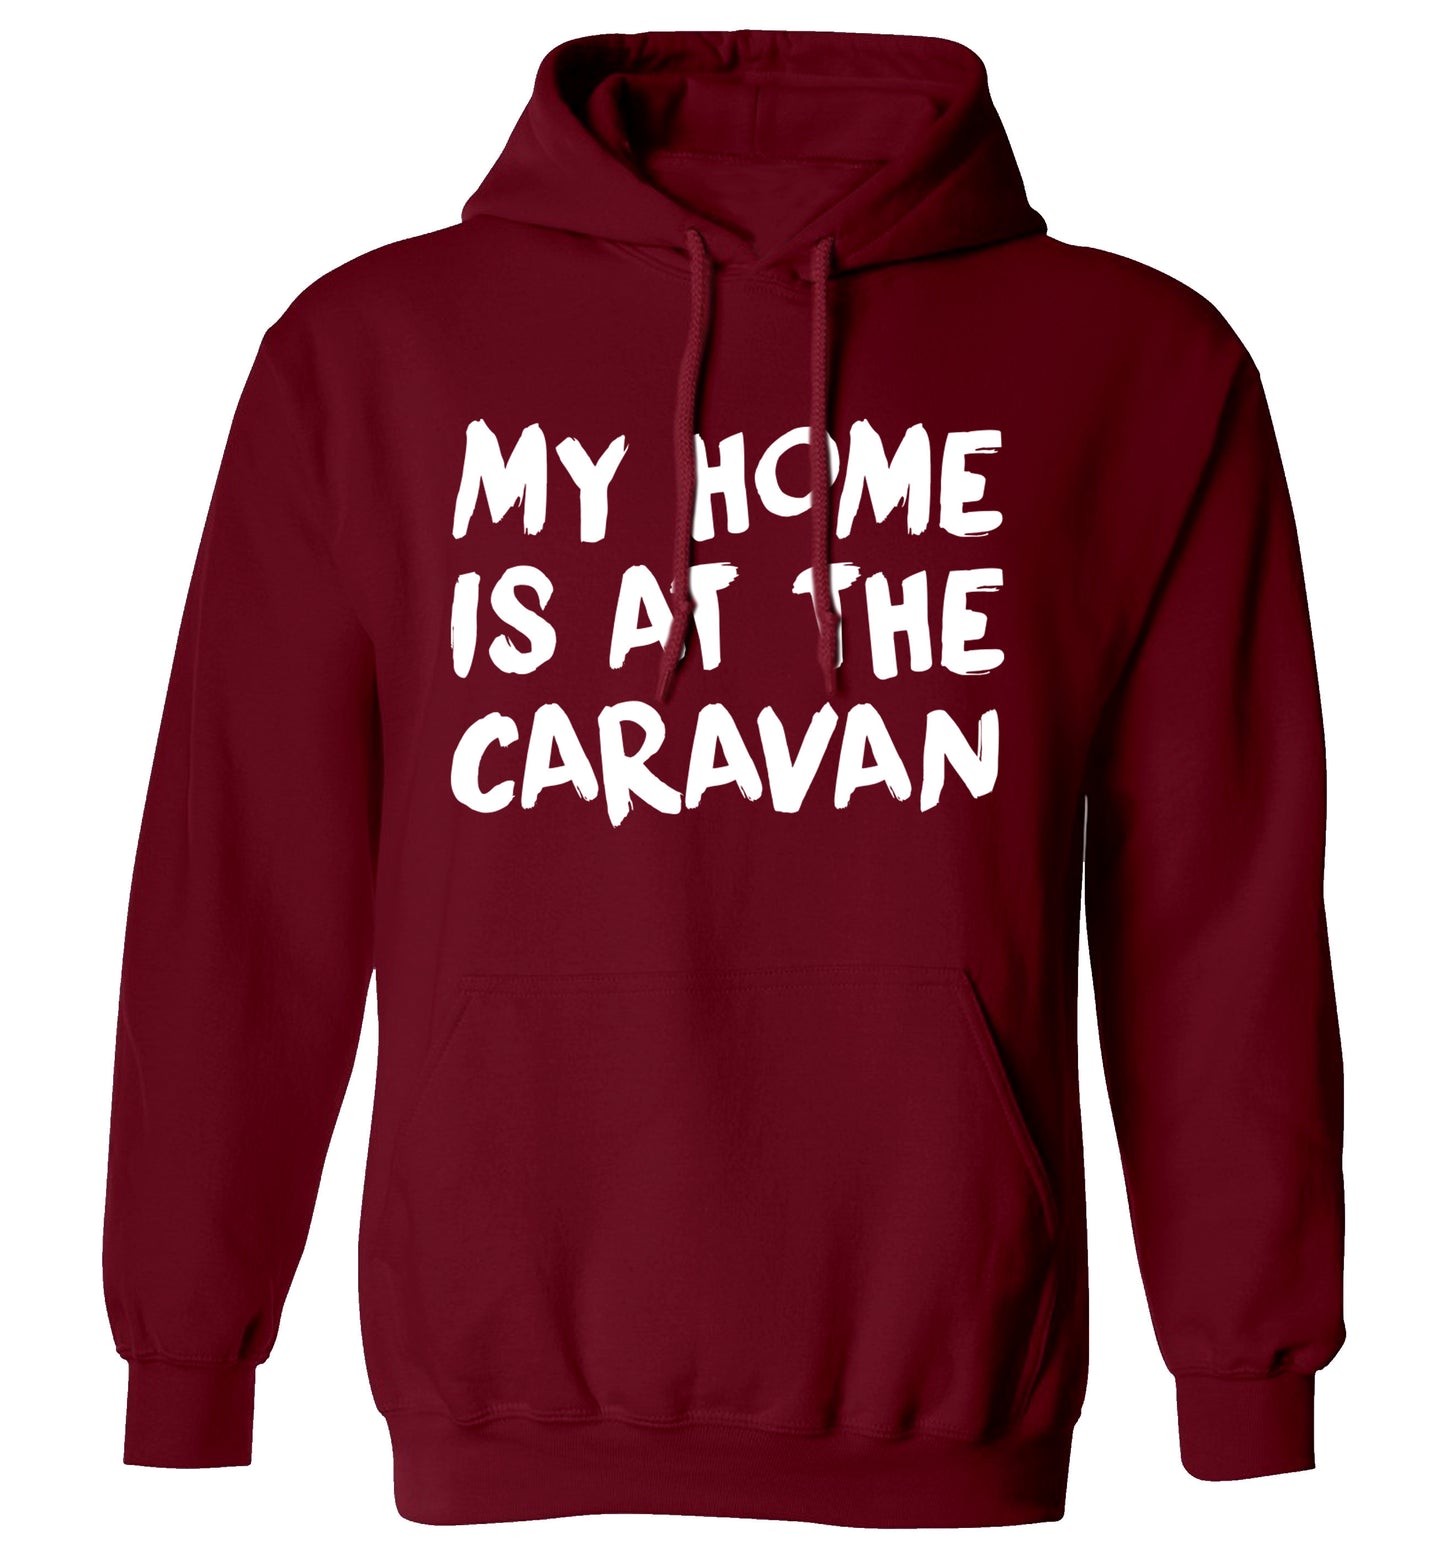 My home is at the caravan adults unisex maroon hoodie 2XL